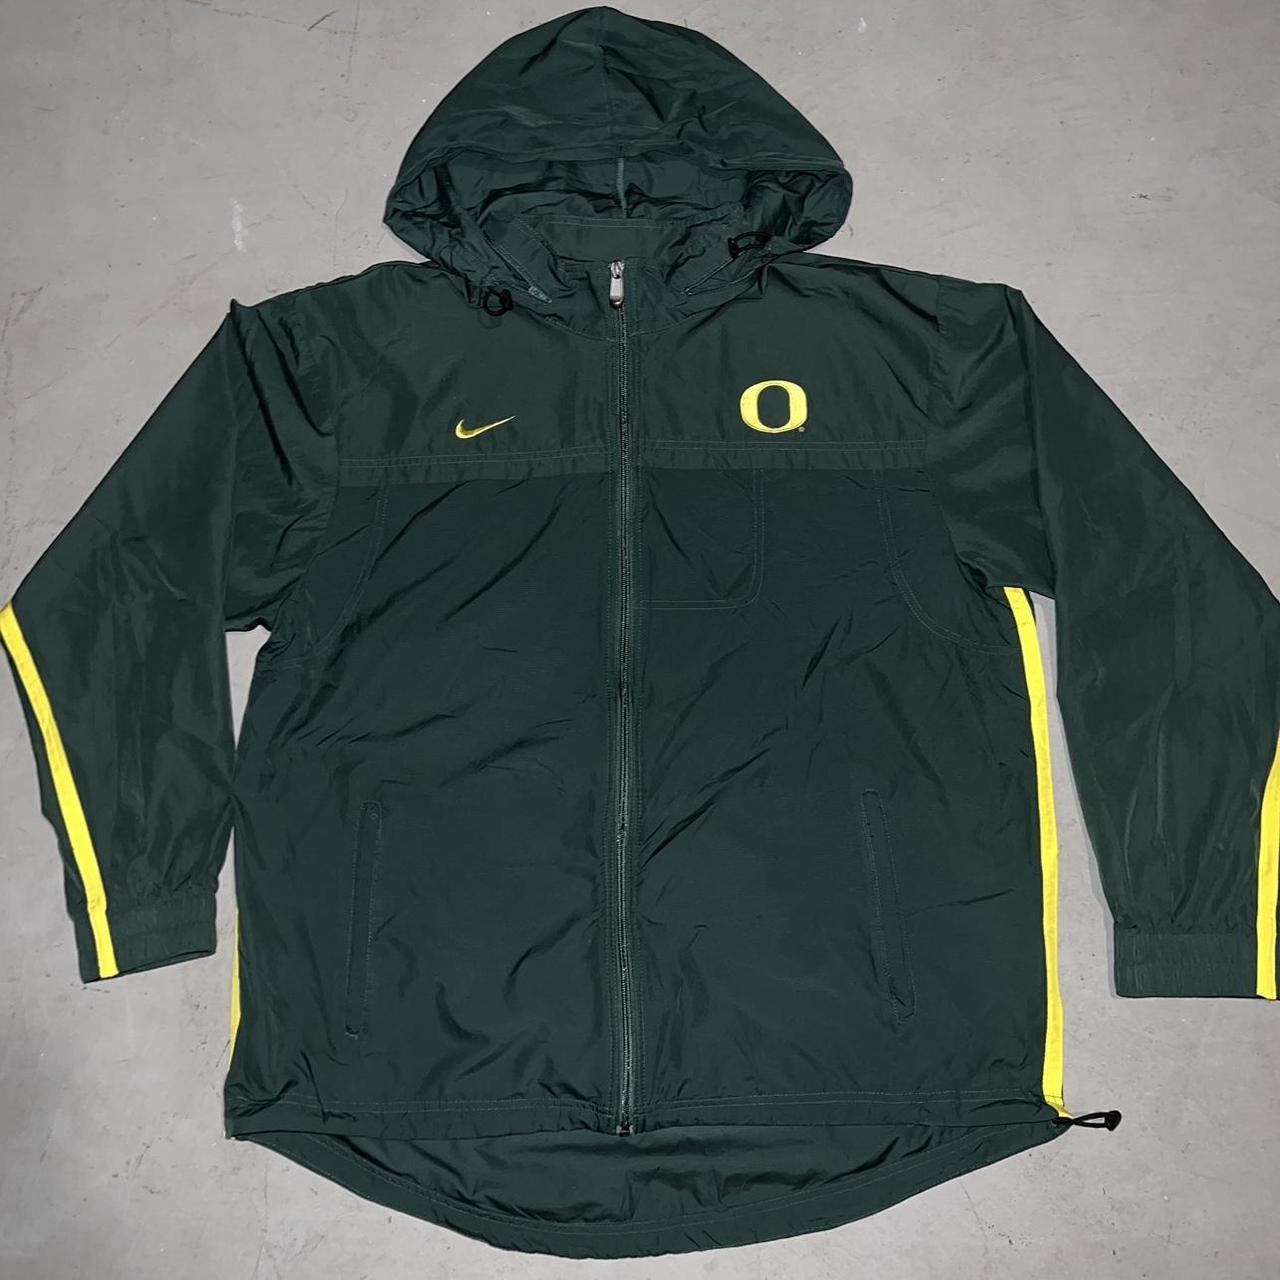 00’s Nike Team Oregon Ducks Windbreaker Jacket Size:... - Depop